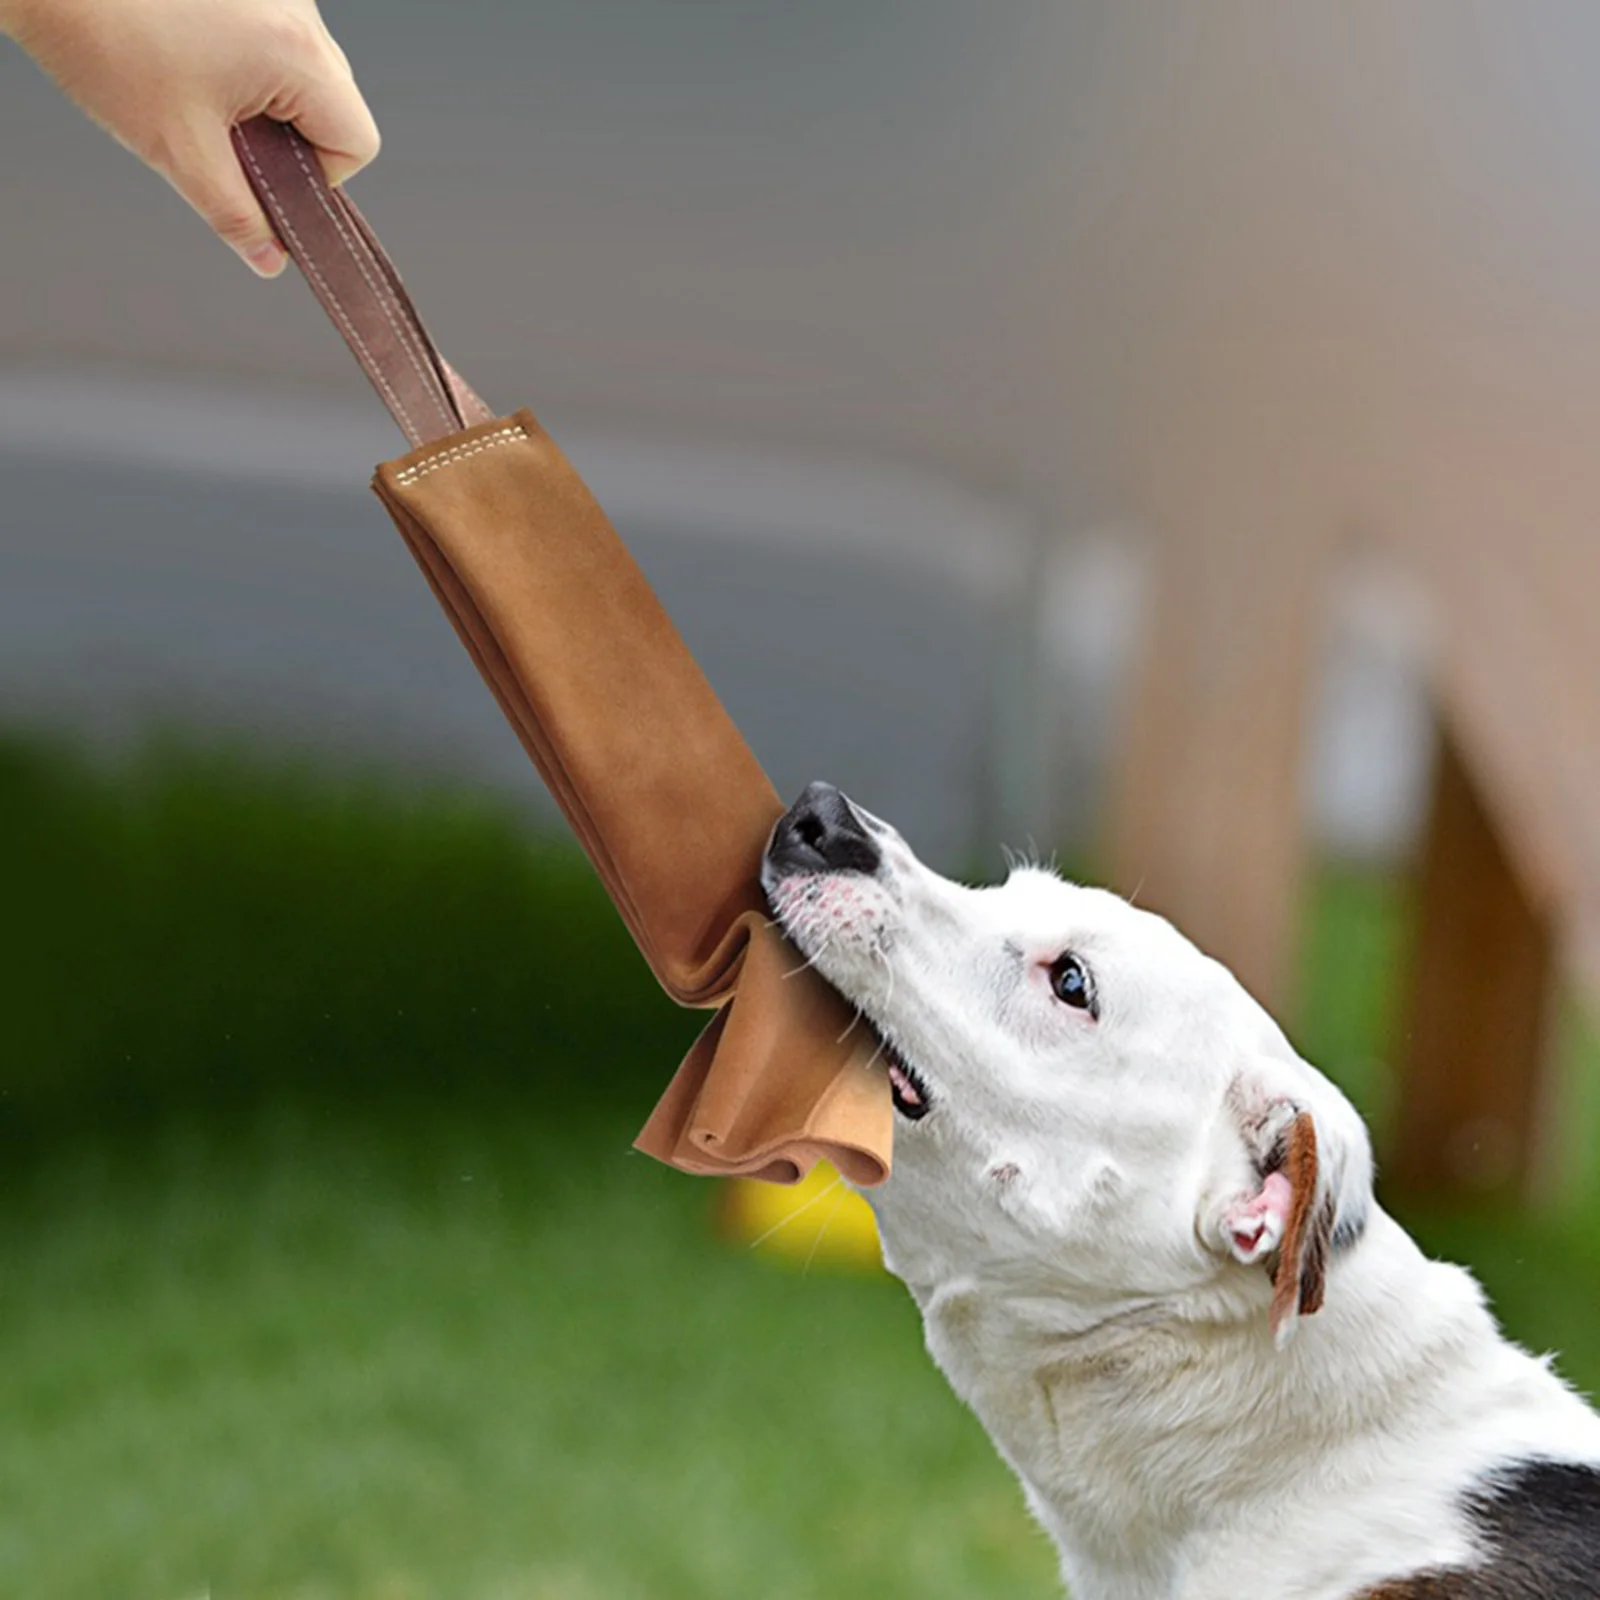 

Тканевая игрушка для собак, замшевая кусающая ткань с ручкой 15 см, для обучения маленьким, средним и крупным собакам